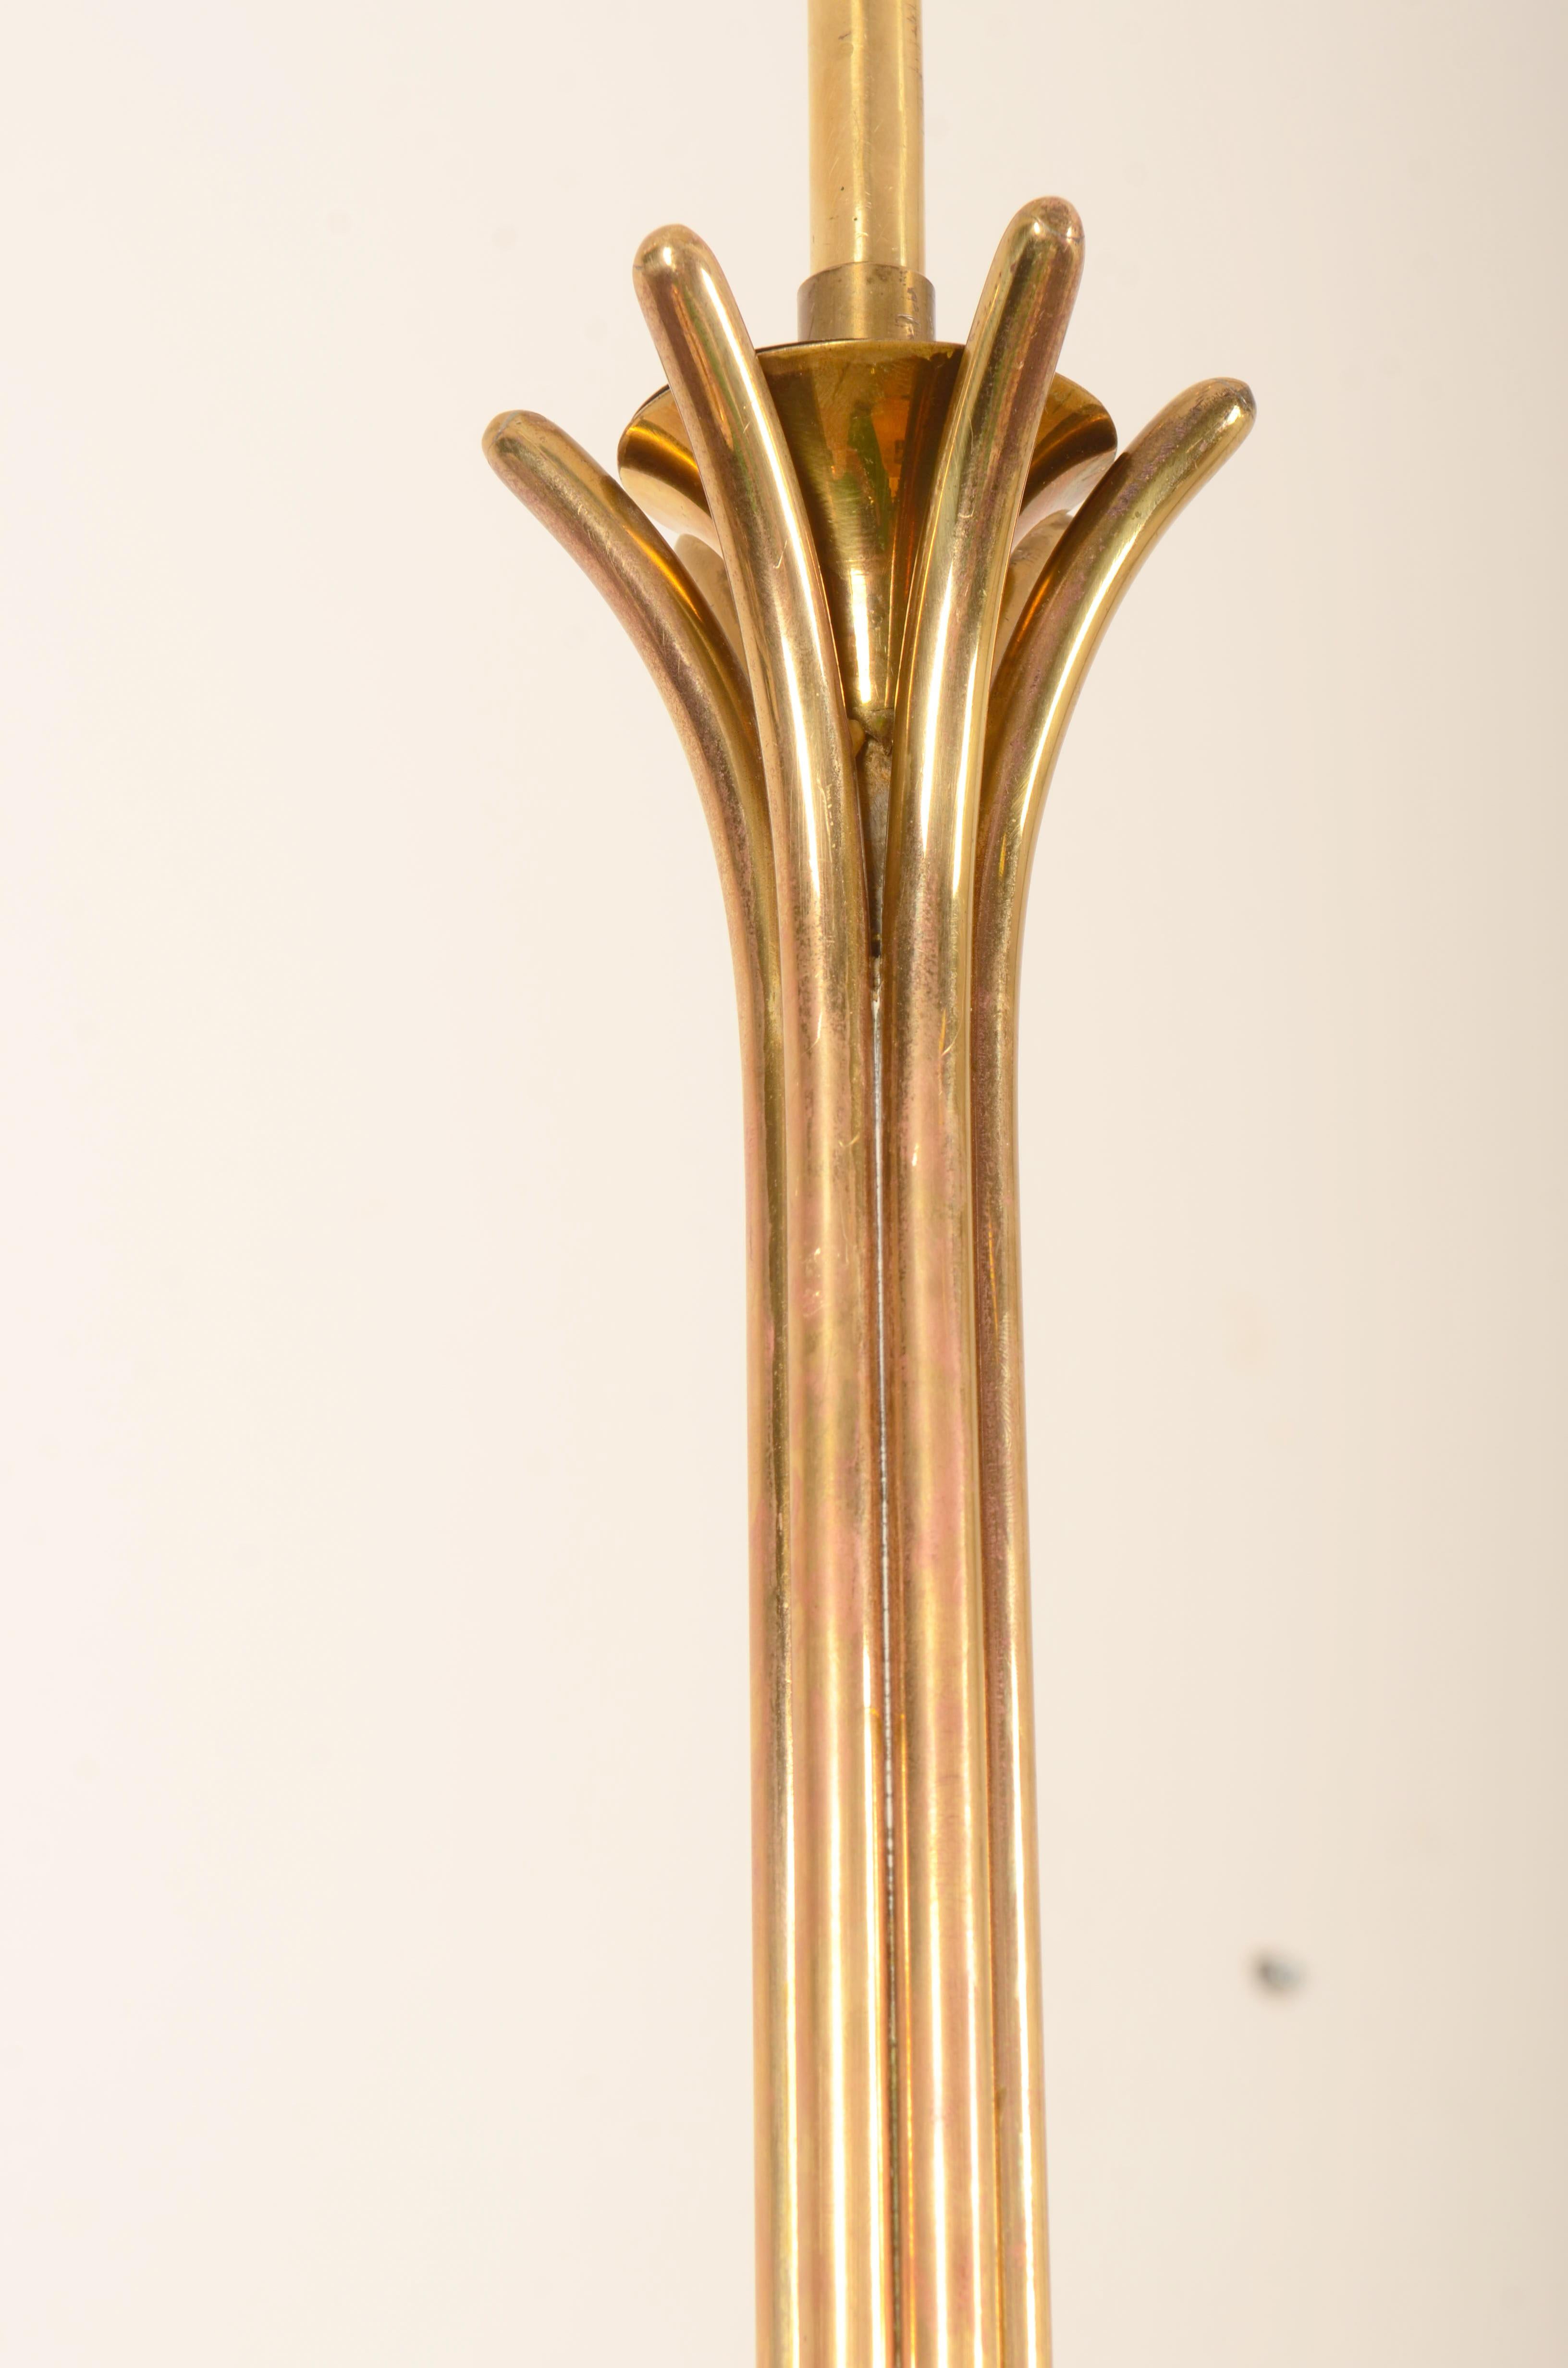 Austrian Brass Chandelier by Josef Frank for Kalmar For Sale